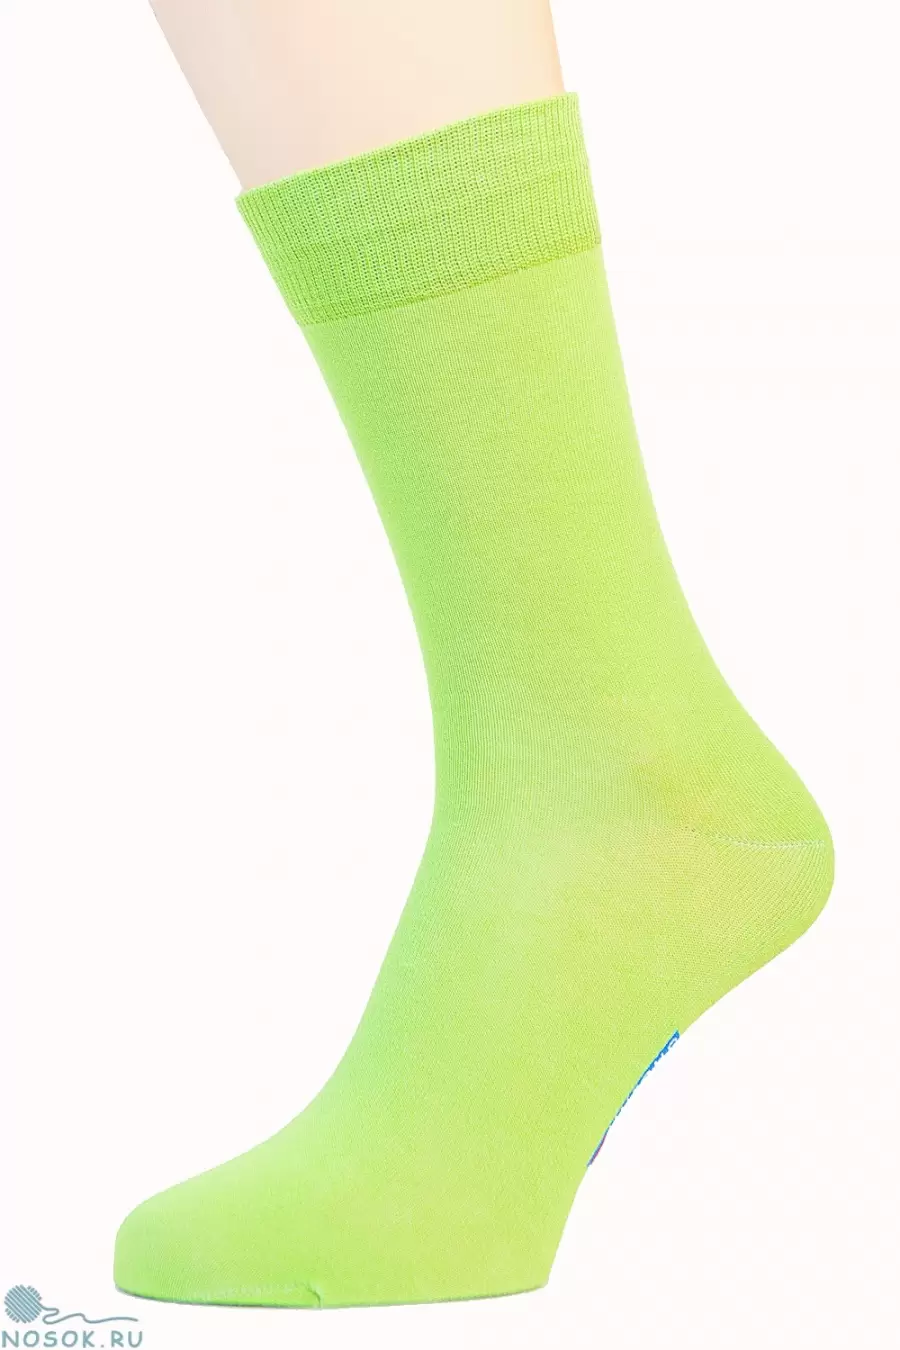 Мужские салатовые носки Pingons 10В27 (изображение 1)